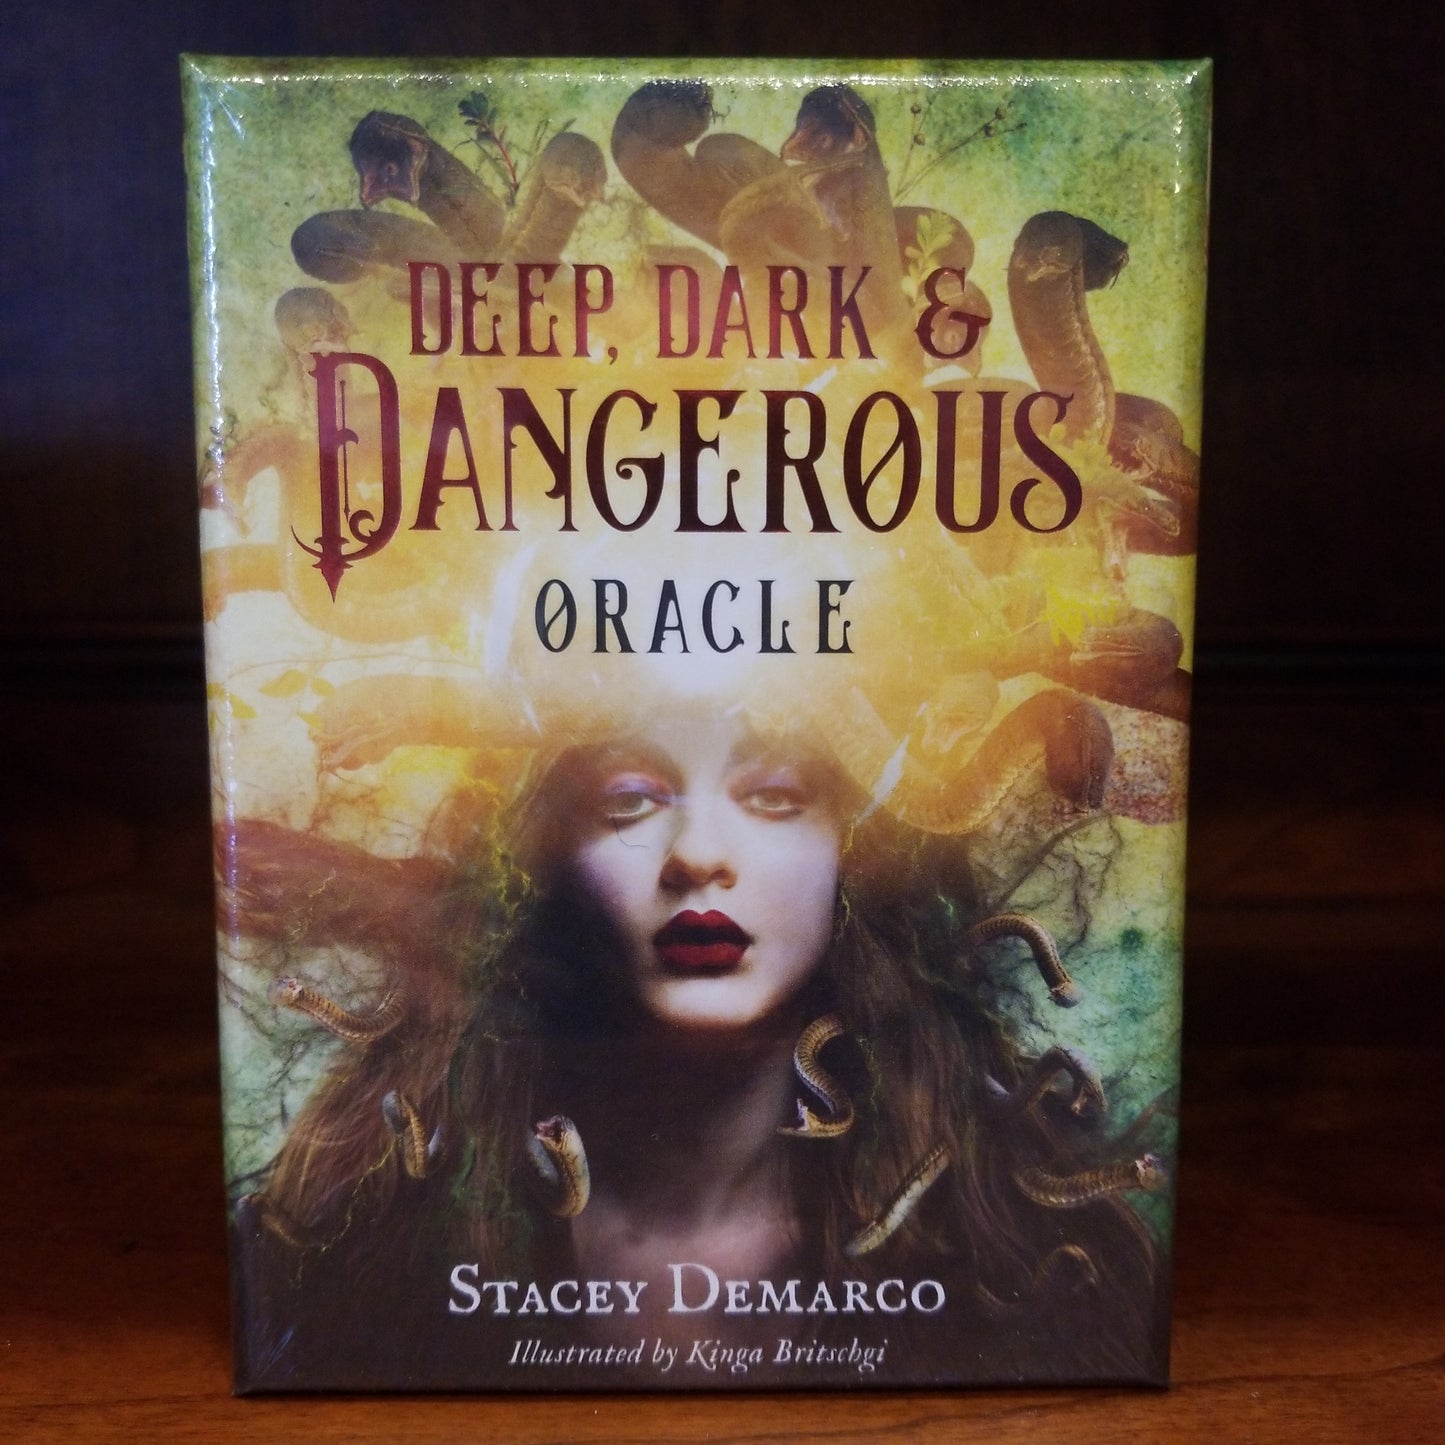 Deep, Dark & Dangerous Oracle